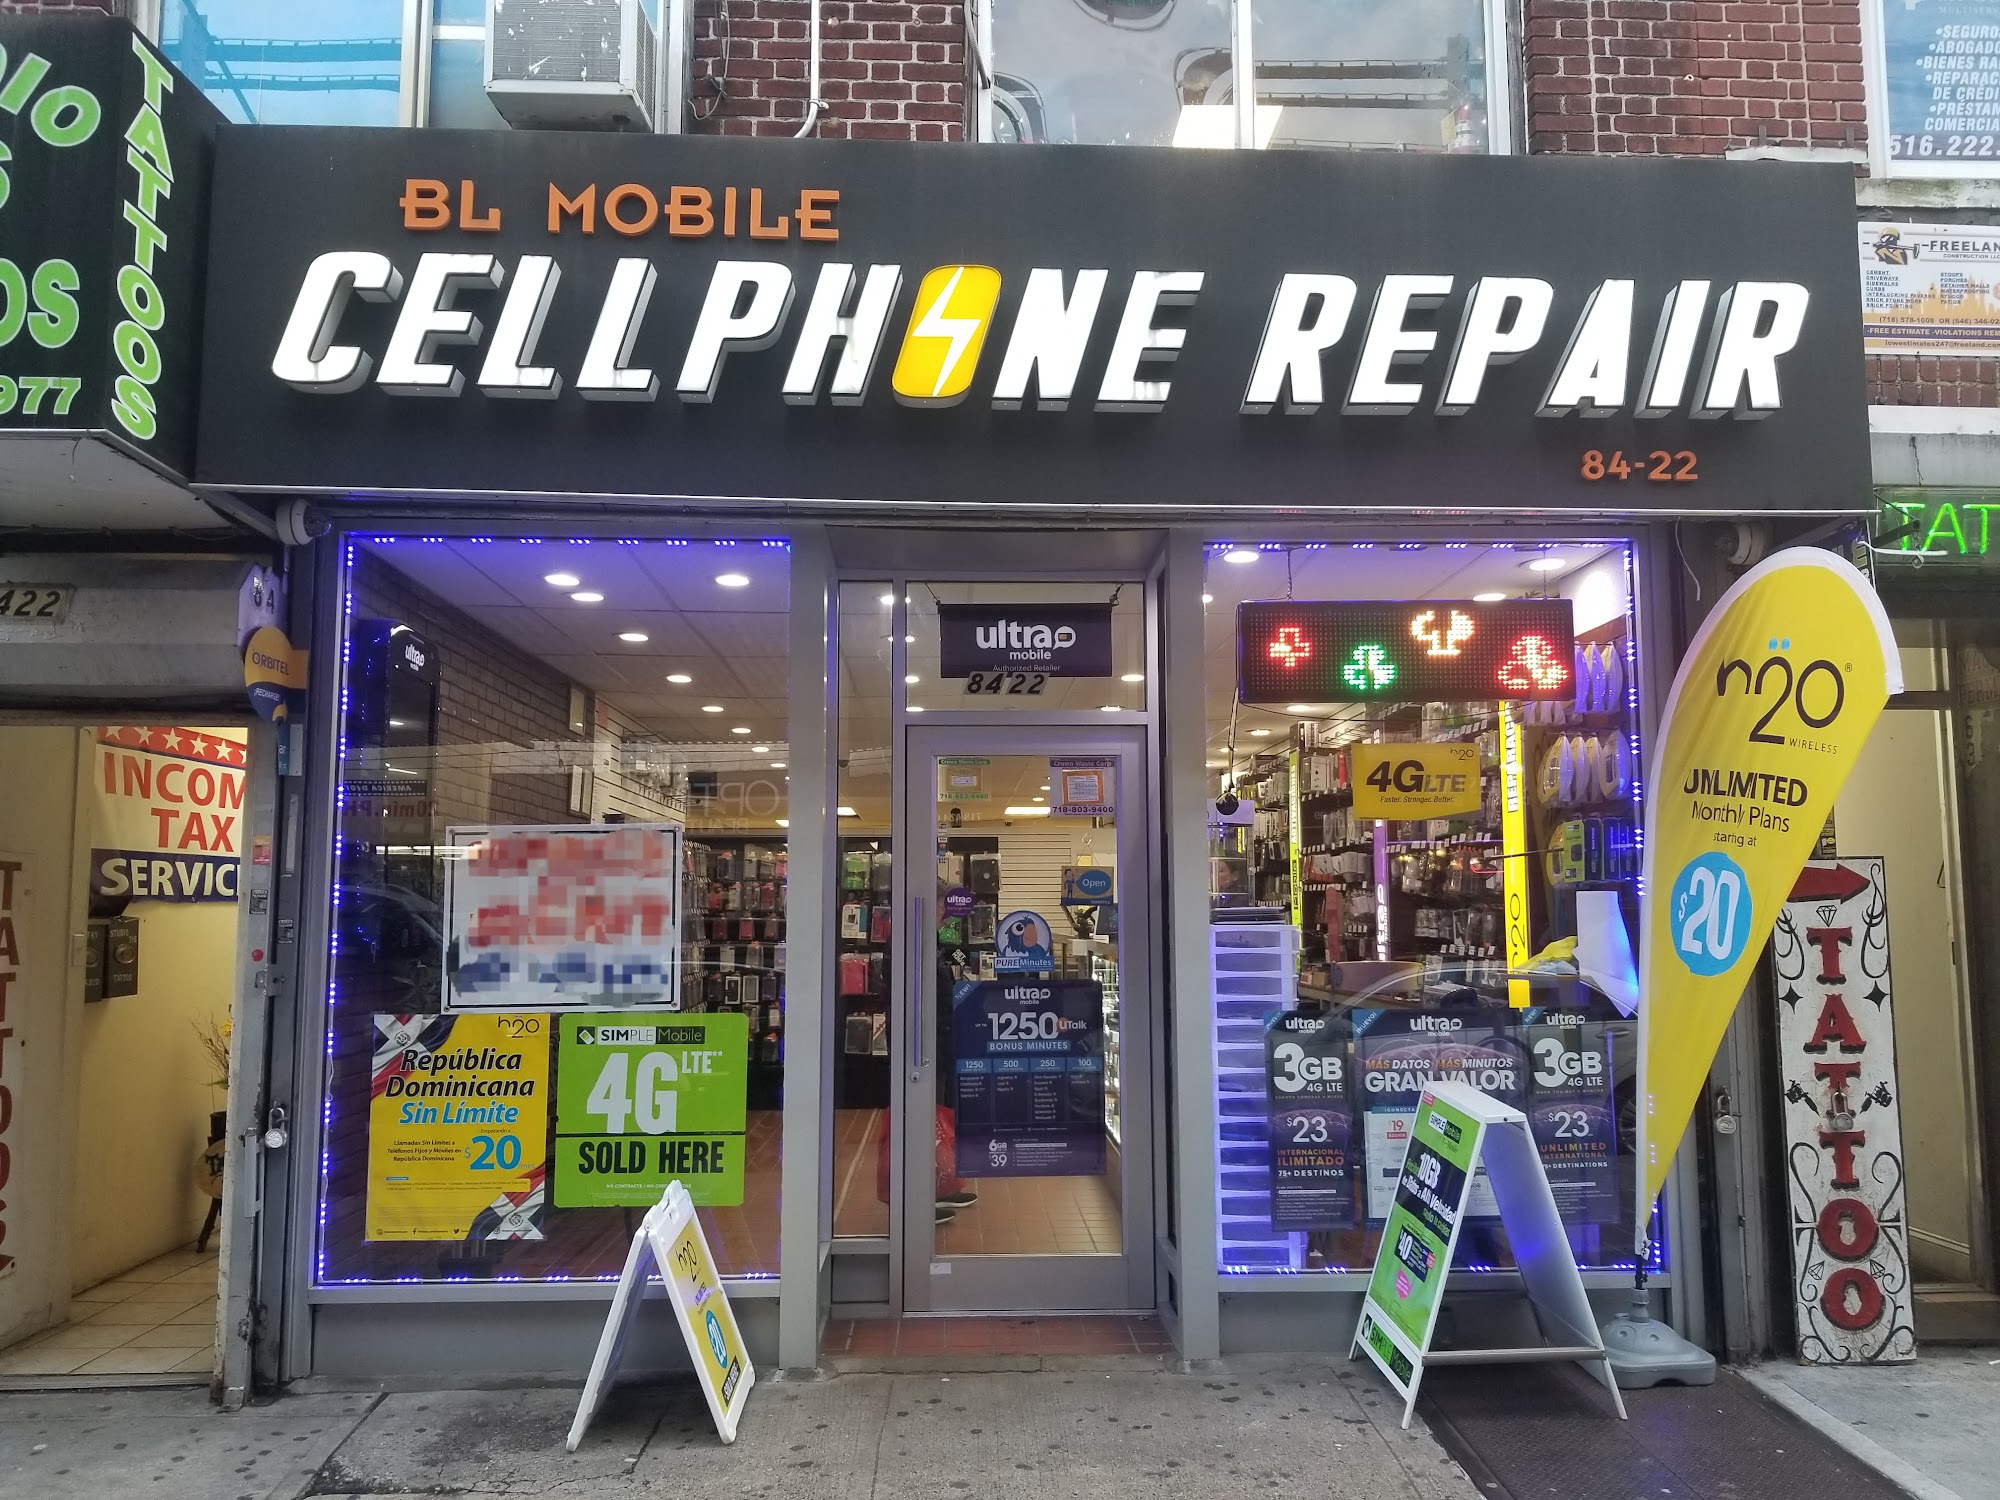 BL MOBILE CELLPHONE REPAIR